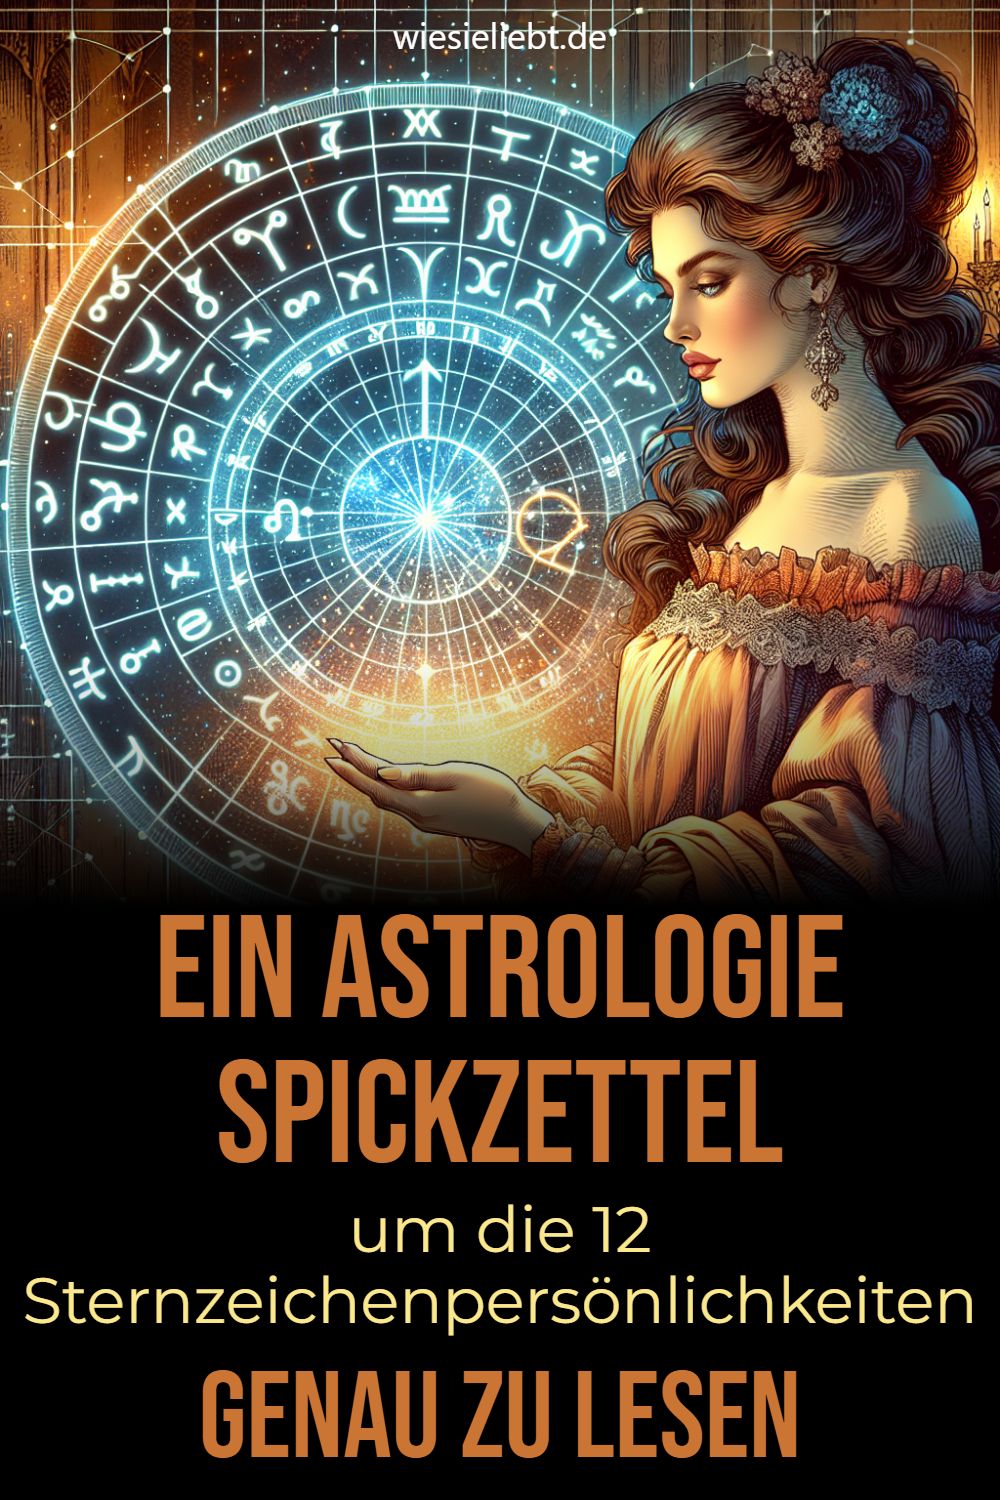 Ein Astrologie Spickzettel um die 12 Sternzeichenpersönlichkeiten GENAU ZU LESEN